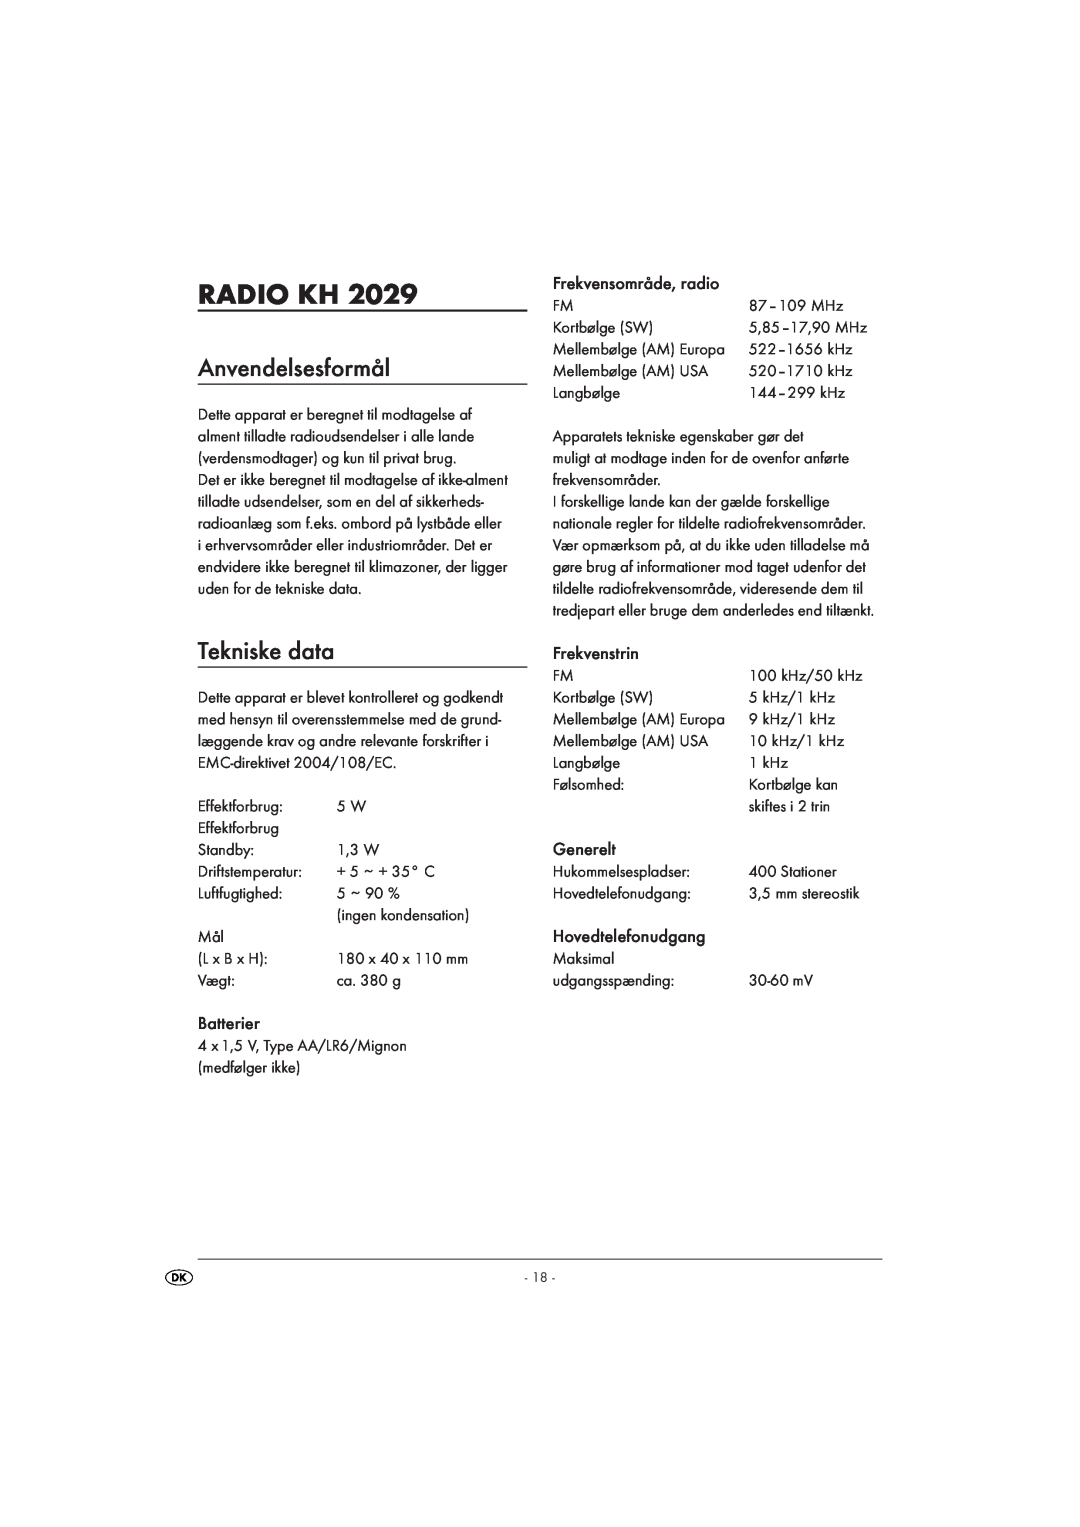 Silvercrest KH 2029 Radio Kh, Anvendelsesformål, Tekniske data, Batterier, Frekvensområde, radio, Frekvenstrin, Generelt 